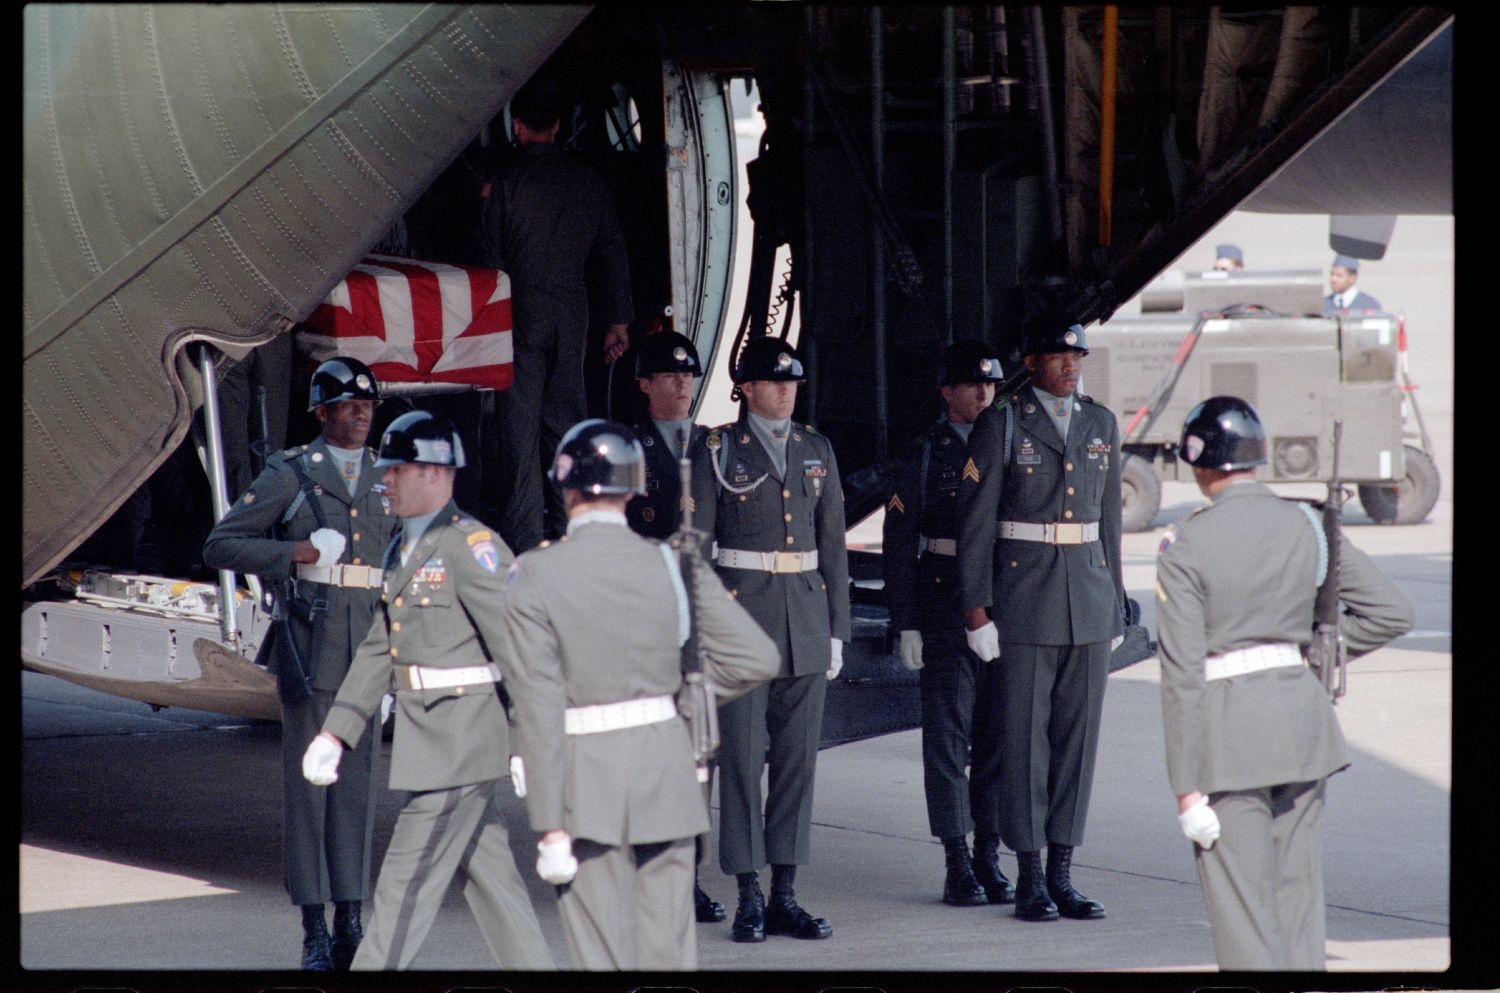 Fotografie: Offizieller Akt zur Überführung der sterblichen Überreste von Staff Sergeant James E. Goins auf dem Flughafen Berlin-Tempelhof (AlliiertenMuseum/U.S. Army Photograph Public Domain Mark)